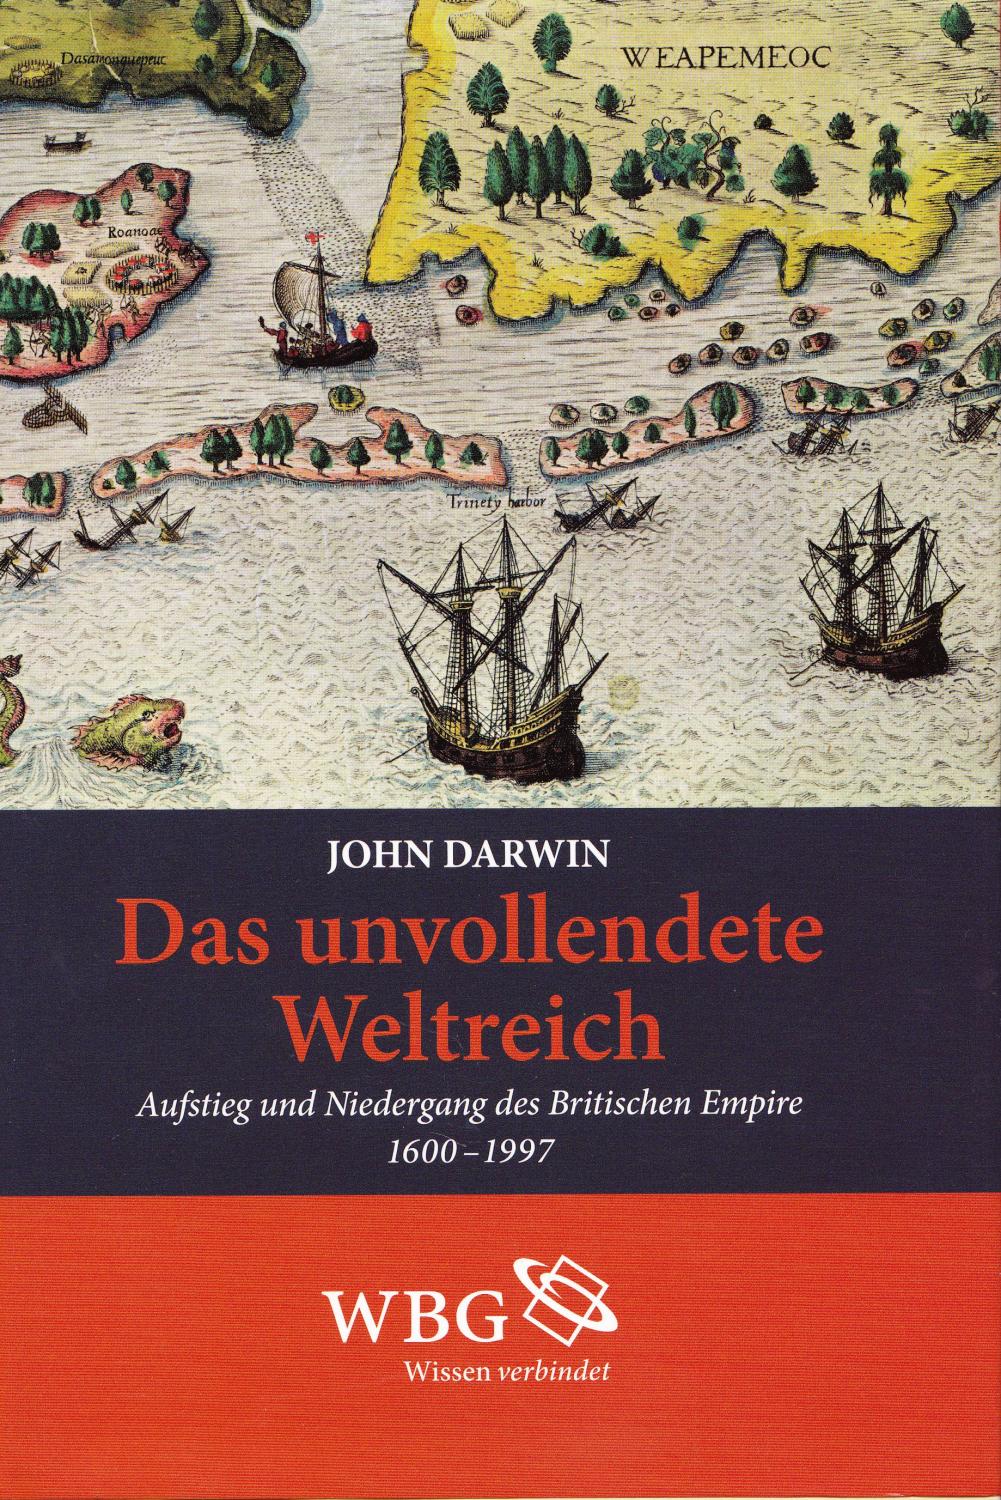 Das unvollendete Weltreich. Aufstieg und Niedergang des Britischen Empire 1600 - 1997. - Darwin, John